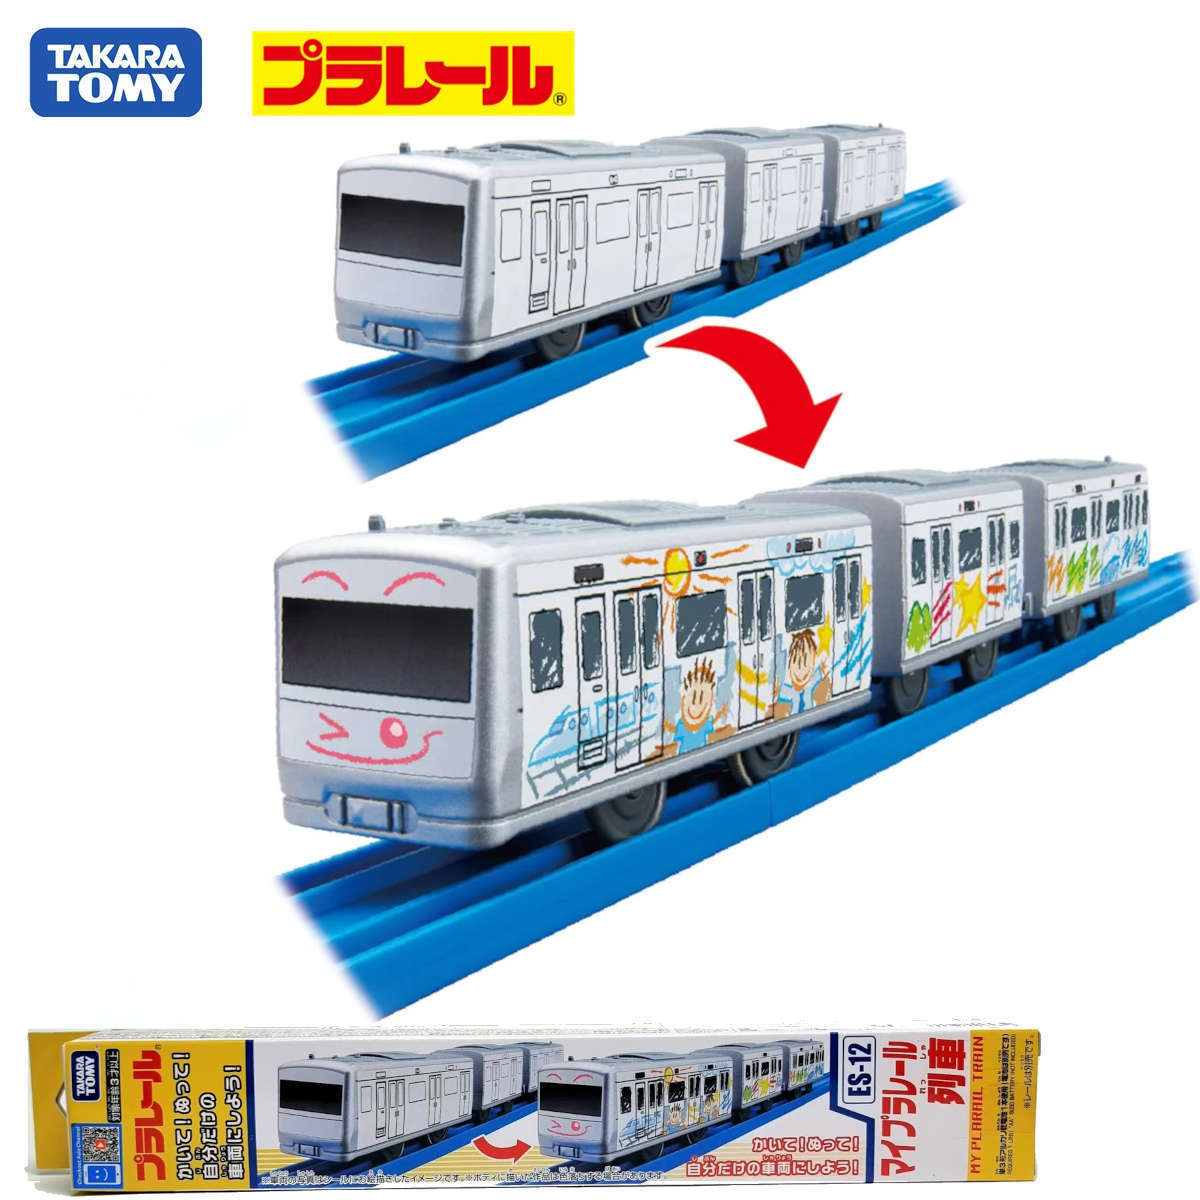 Mô hình tàu điện Takara Tomy ES-12 My Plarail Train